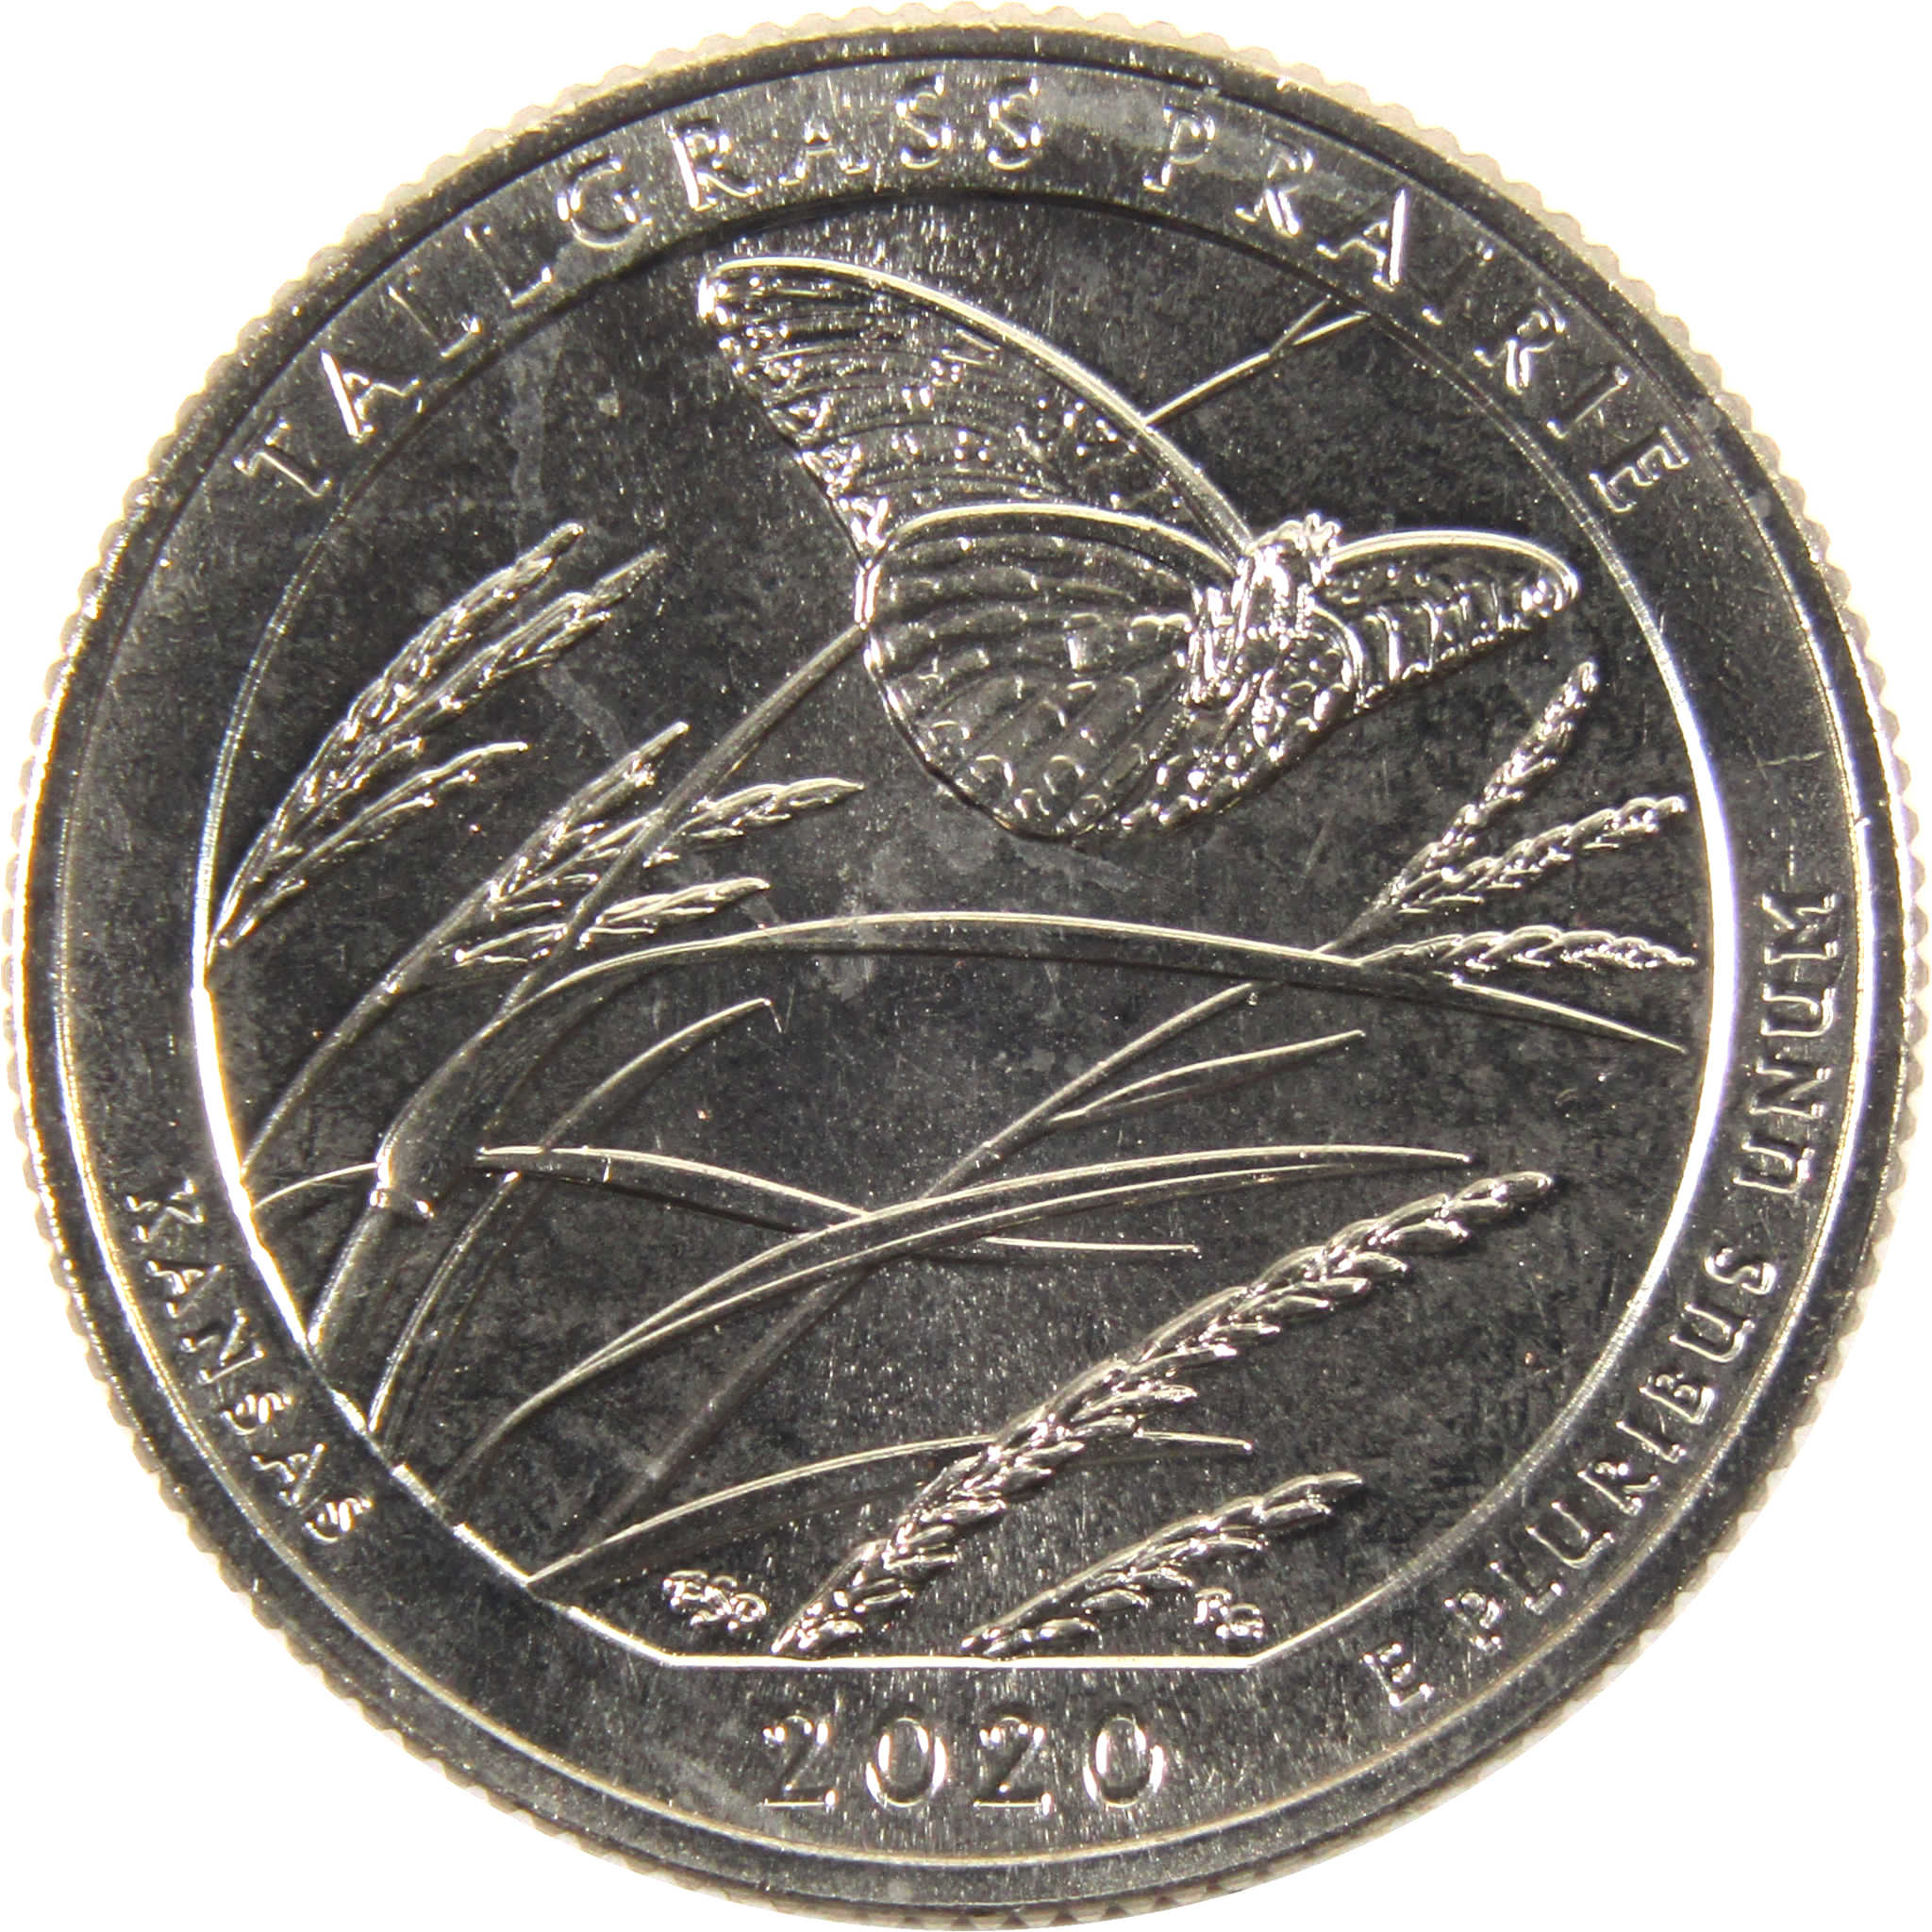 2020 S Tallgrass Prairie National Park Quarter Uncirculated Clad Coin